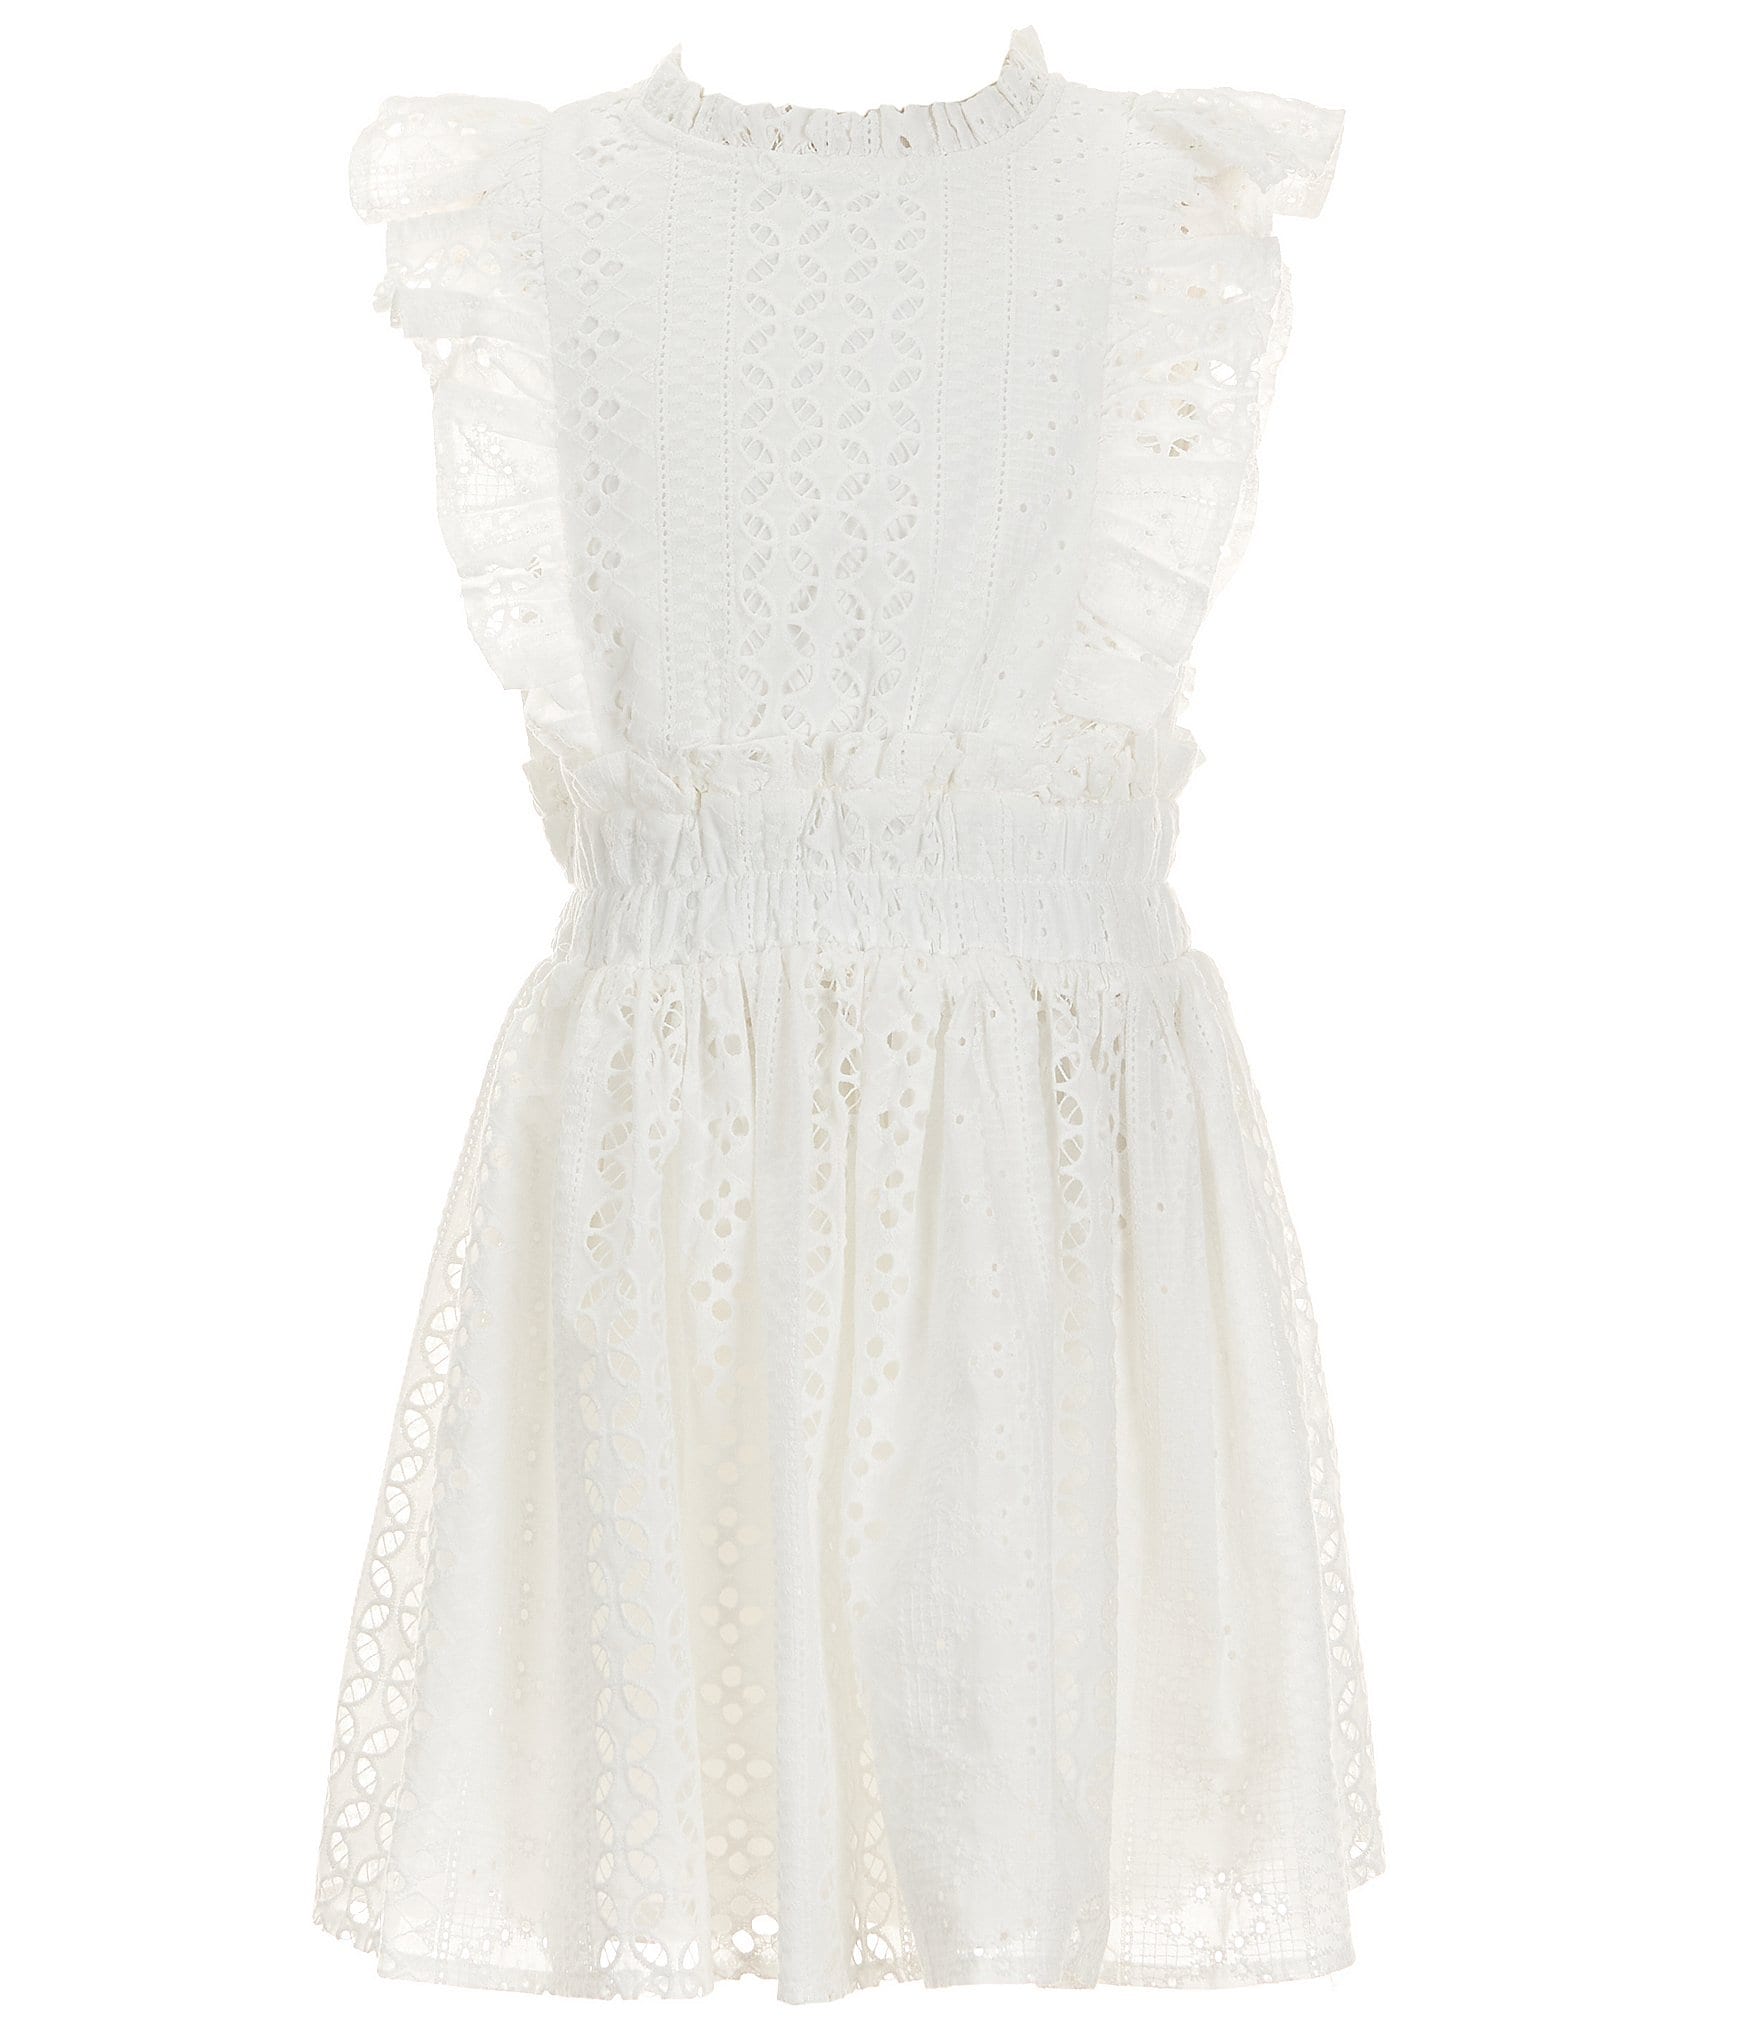 GB Big Girls 7-16 Sleeveless White Lace Ruffle Dress | Dillard's